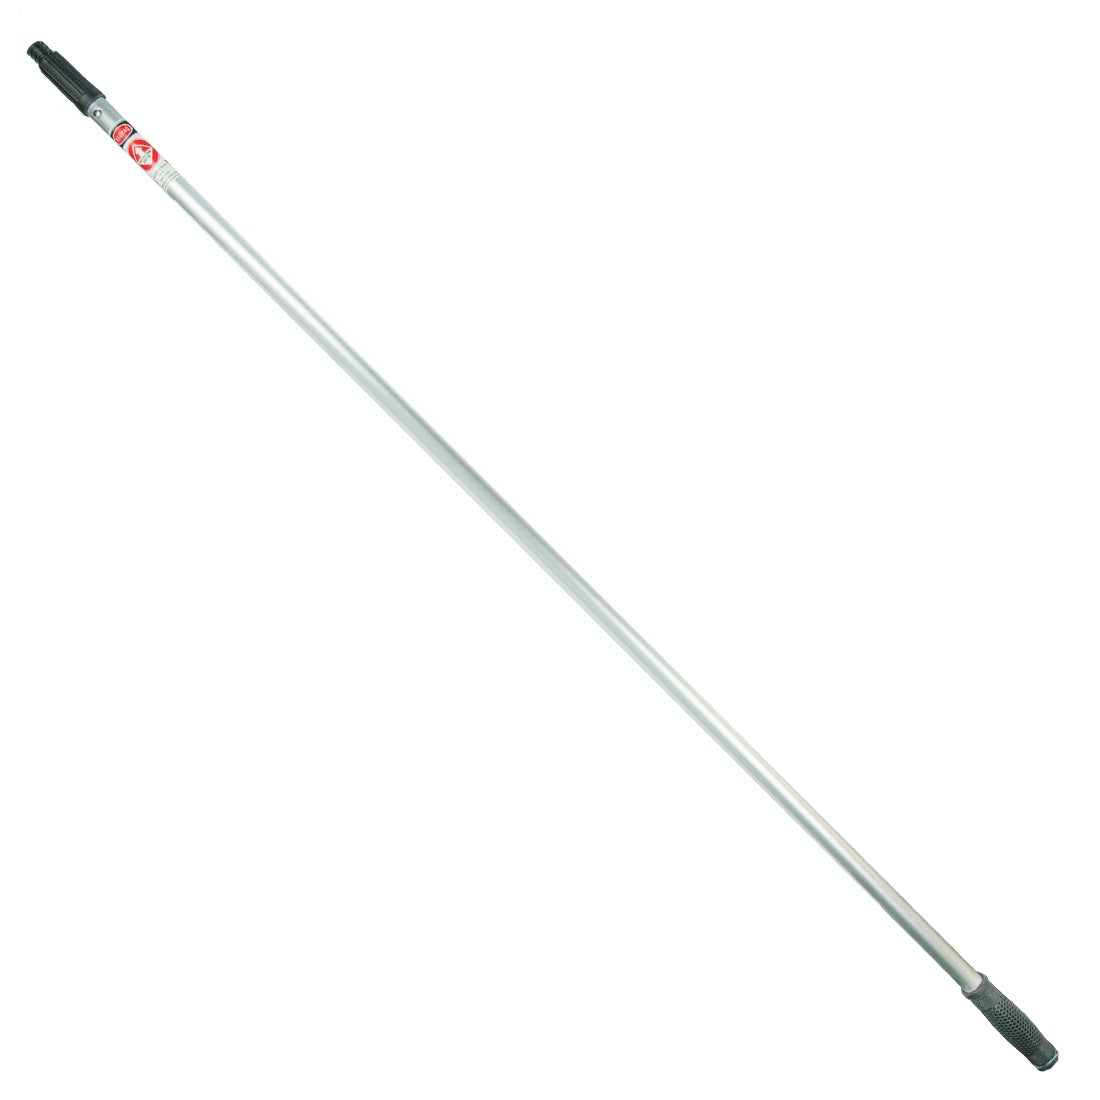 Pulex Alloy Extension Pole: Great Value Aluminum Poles